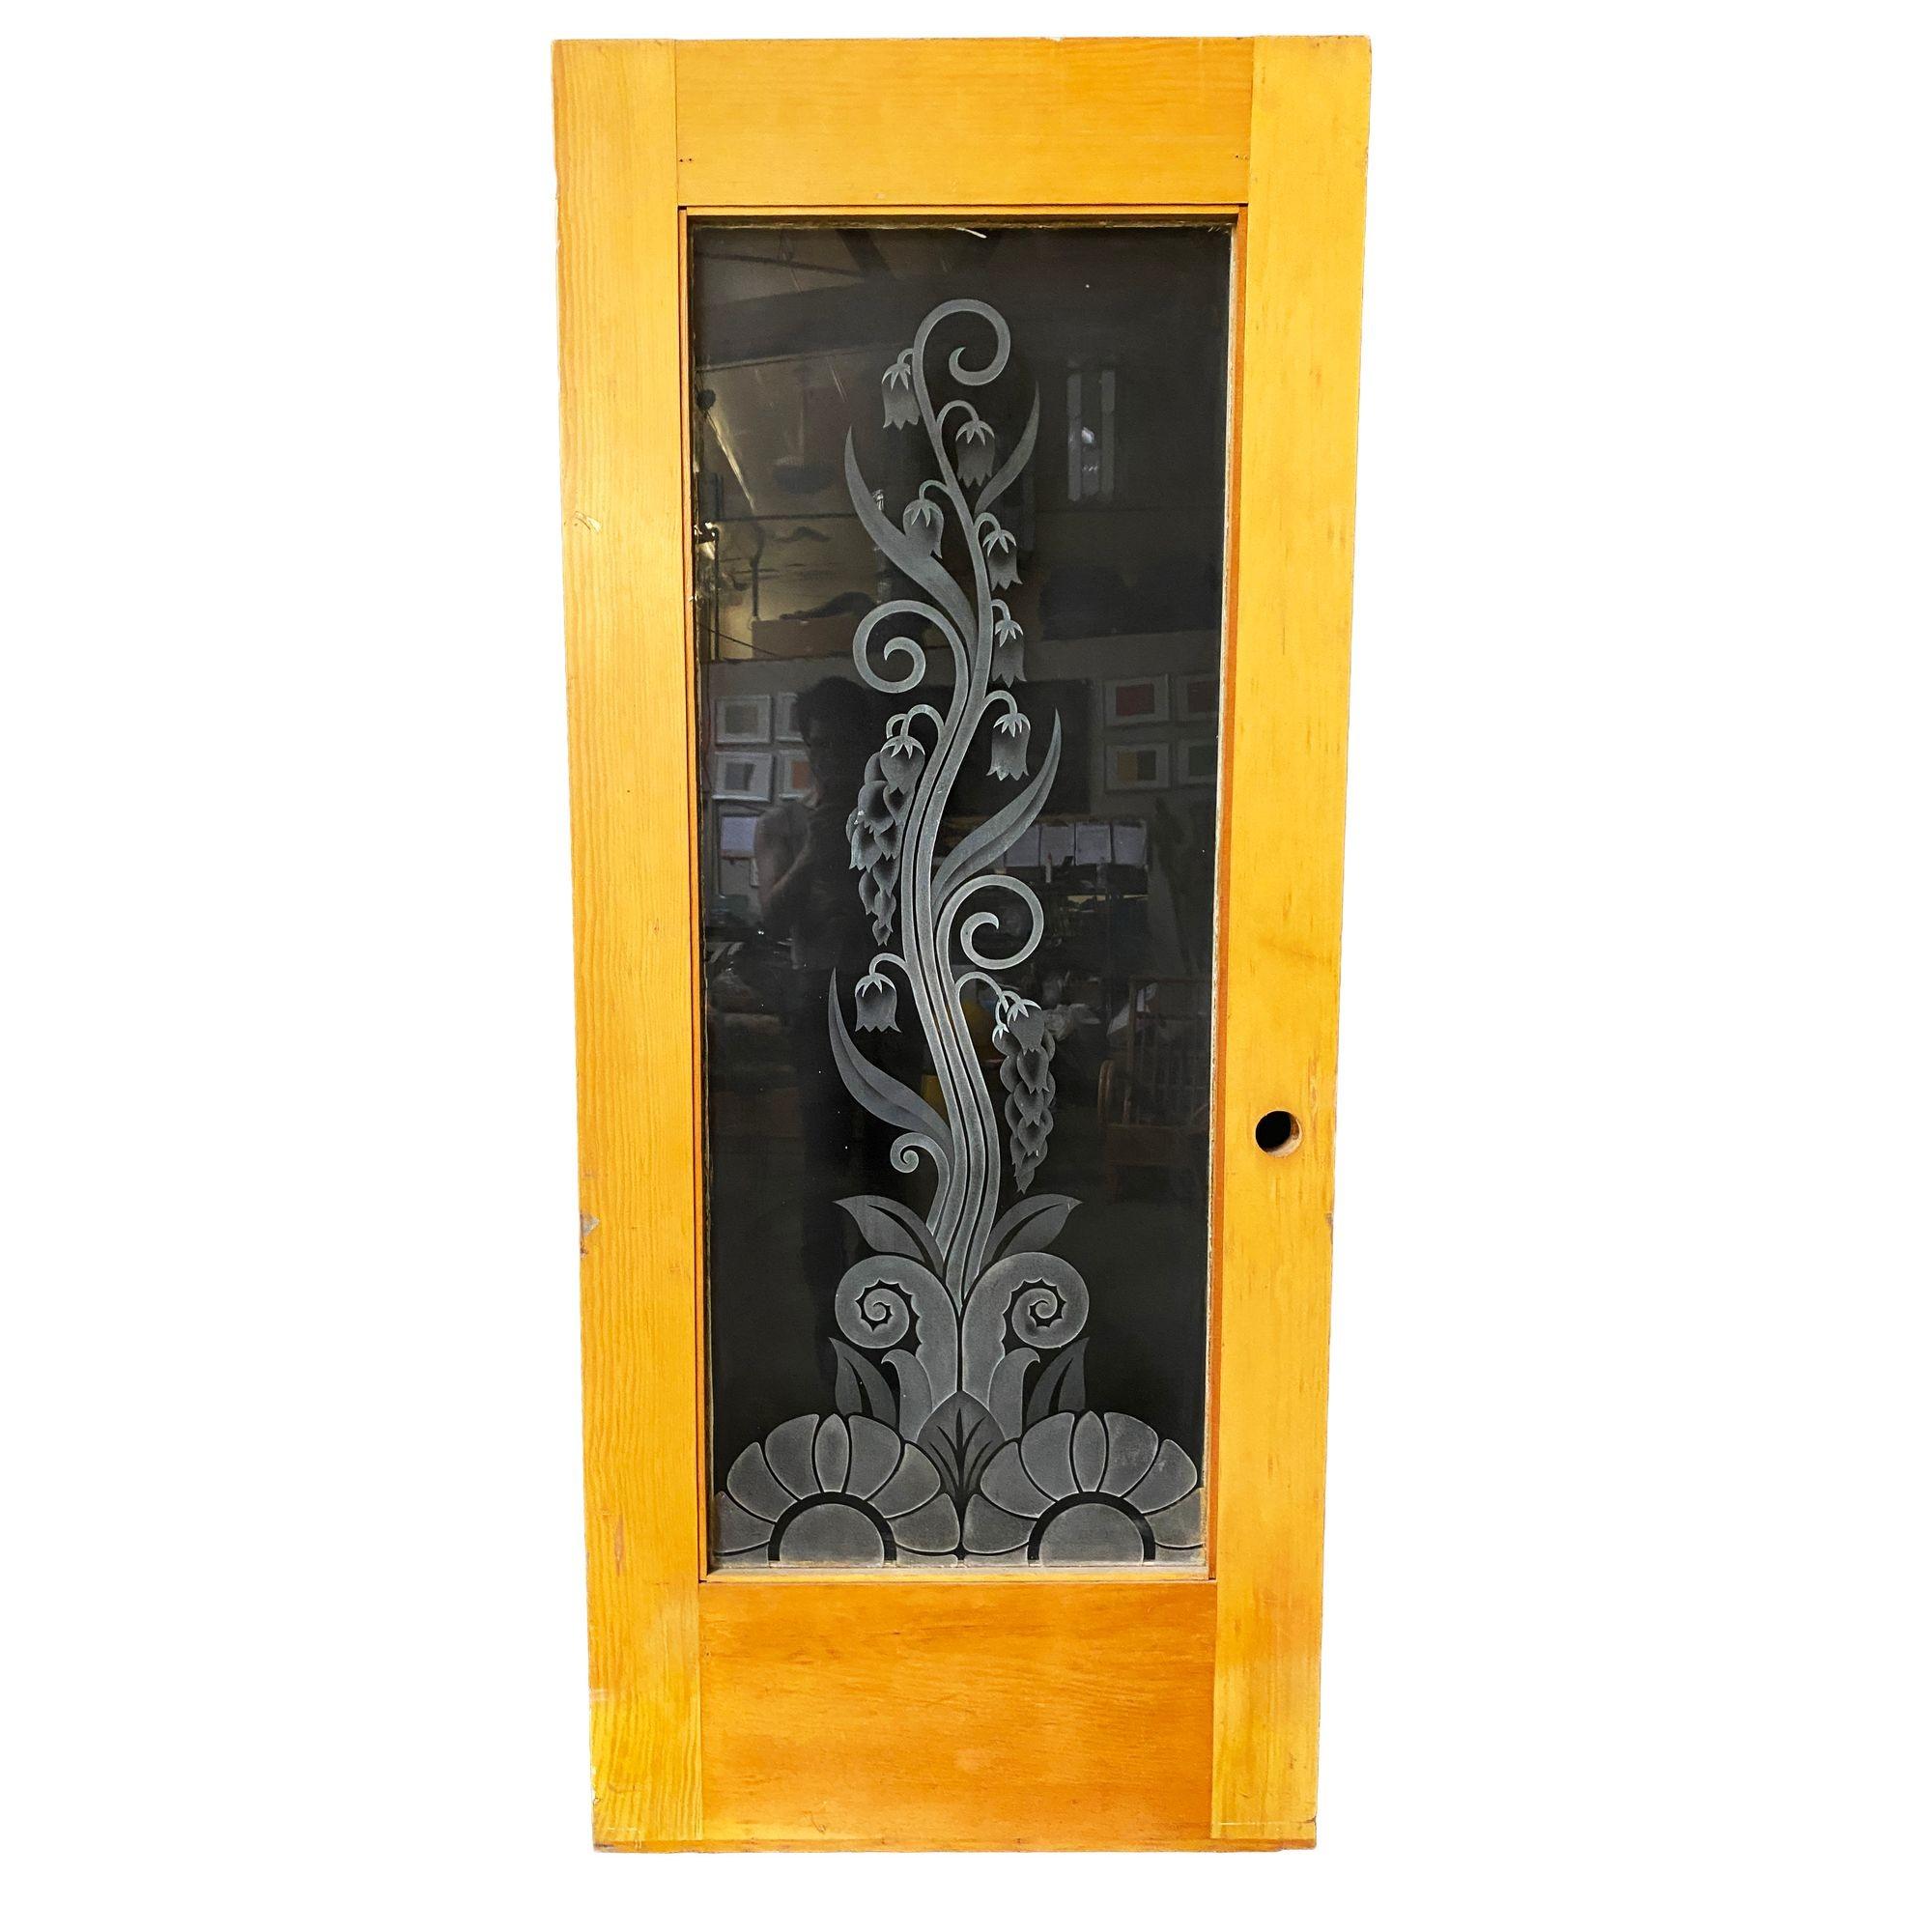 Maßgefertigte, handgeätzte/geschliffene Kunstglastür mit einem organischen Rankenmuster, das aus einer geometrischen Blume am Boden hervorgeht. Die maßgefertigte Glasscheibe ist an einem Türrahmen aus Eichenholz befestigt. 
 
Diese Tür wurde in